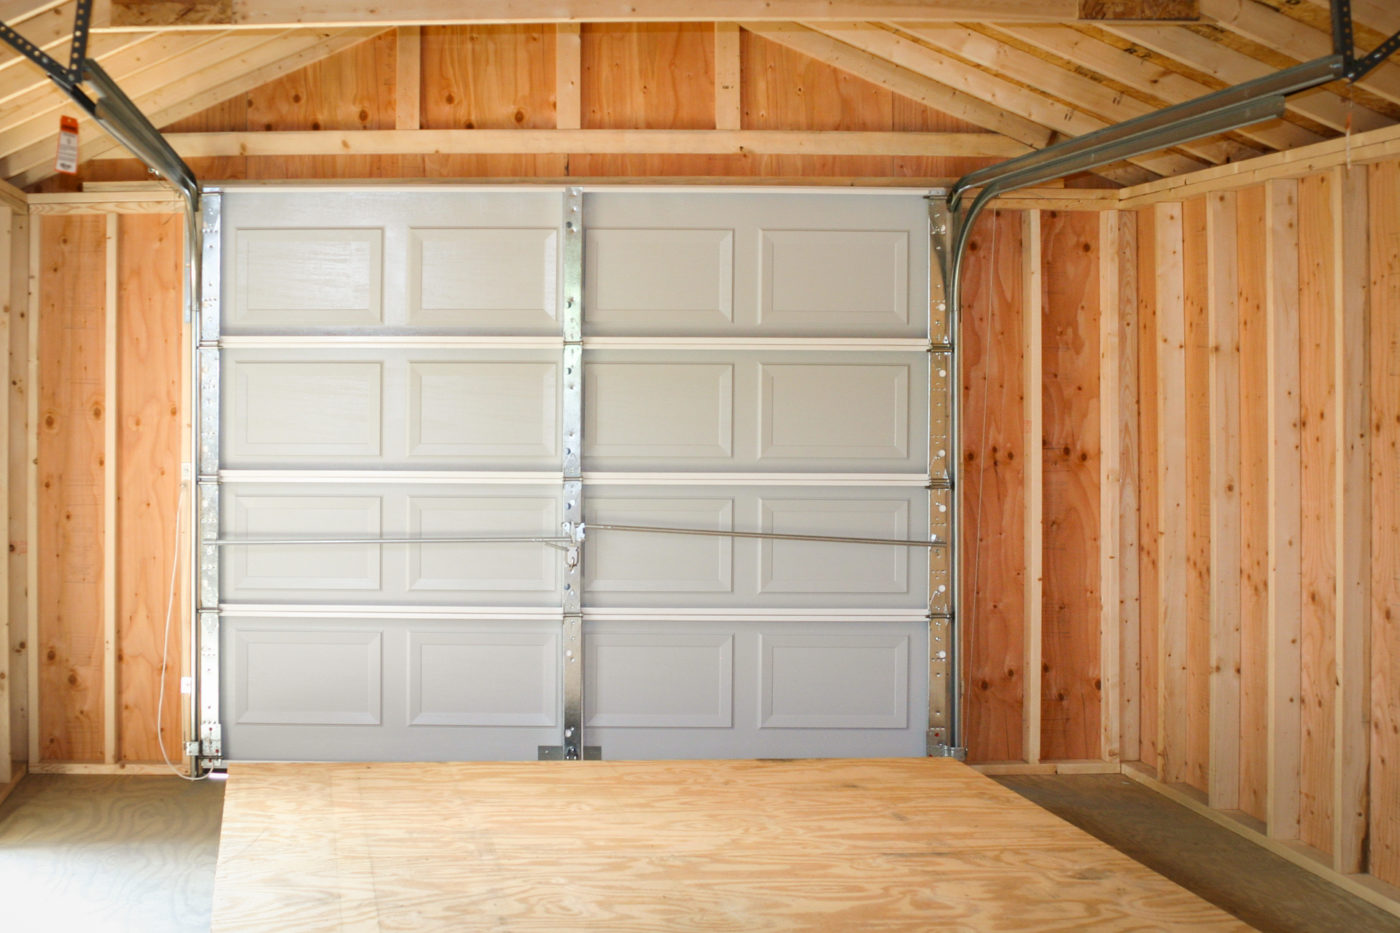 A garage kit interior